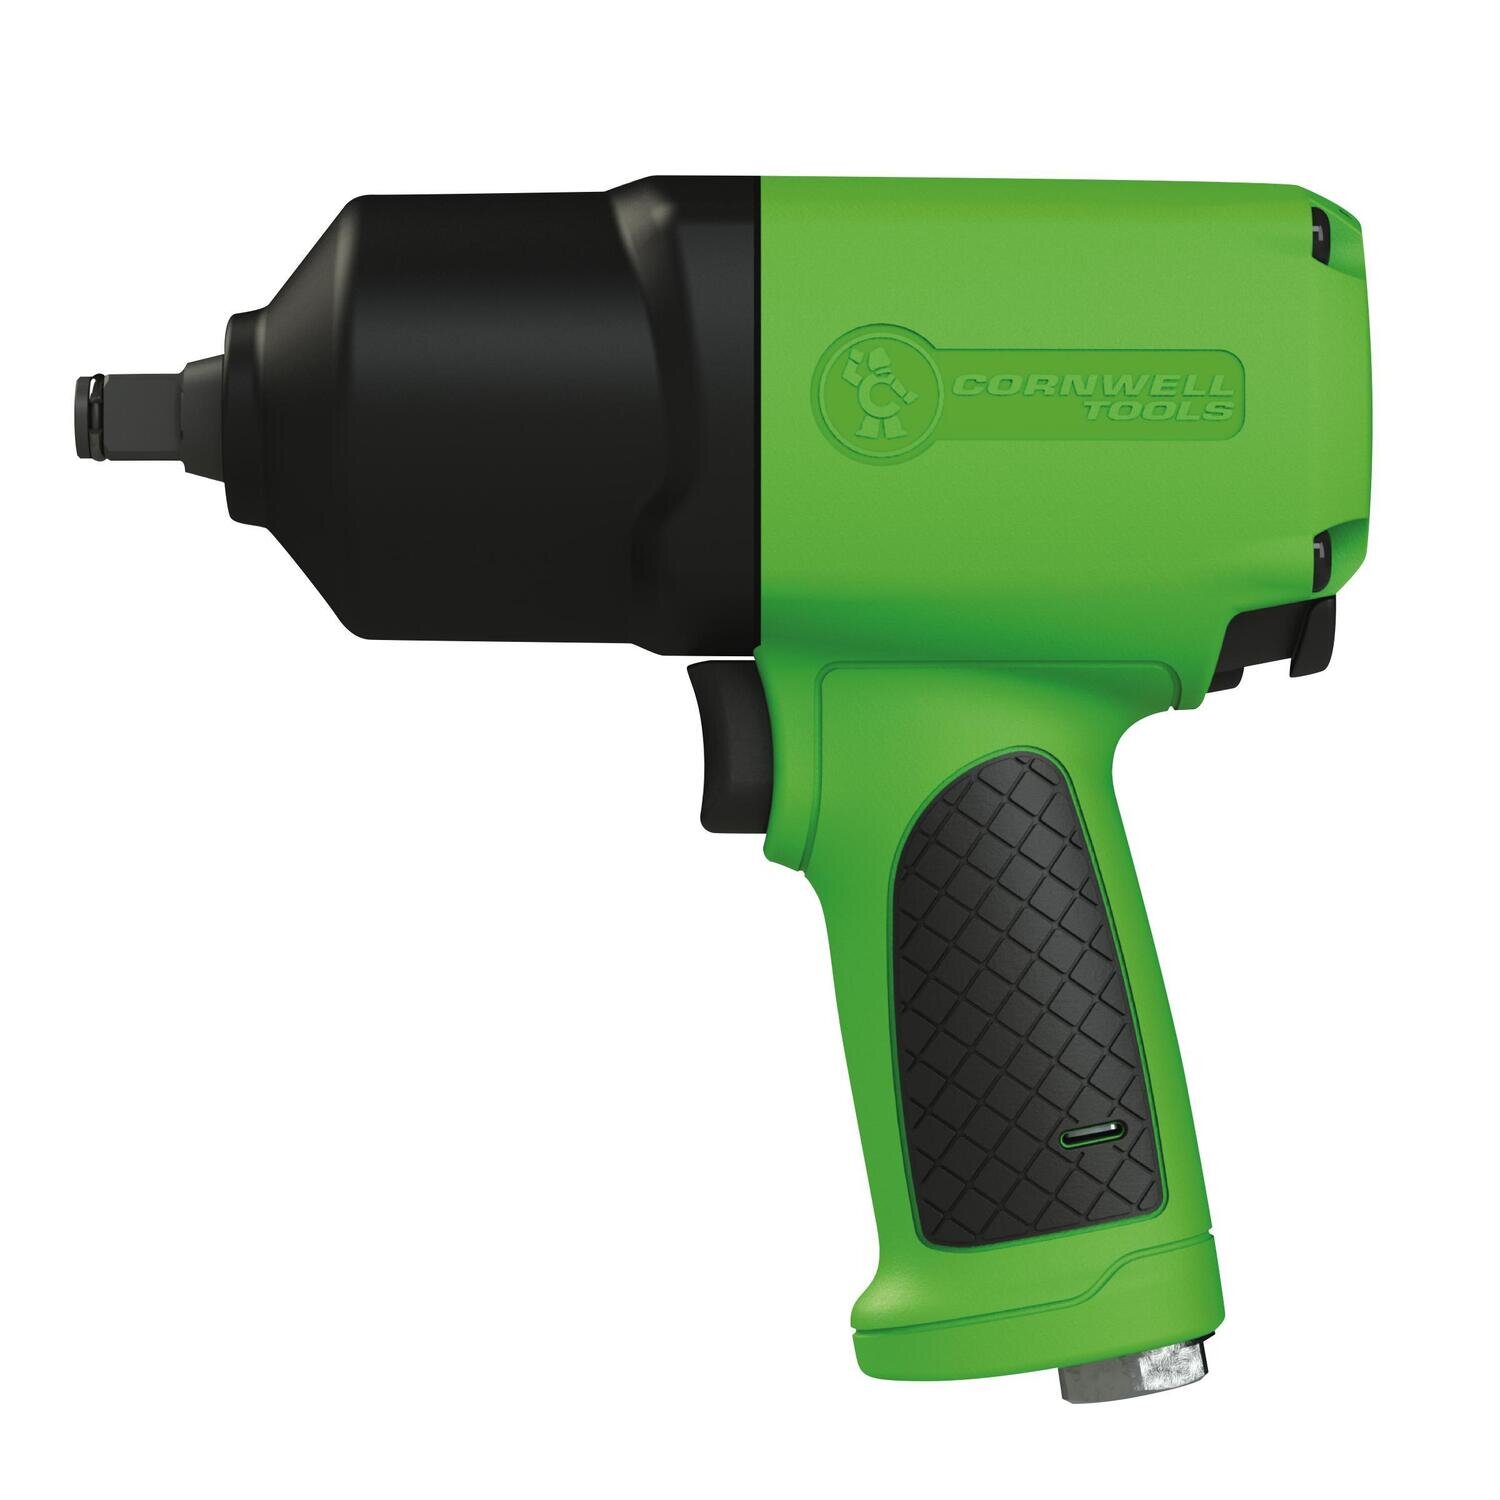 IRC9000G - 1/2” Premium Impact Wrench, Neon Green